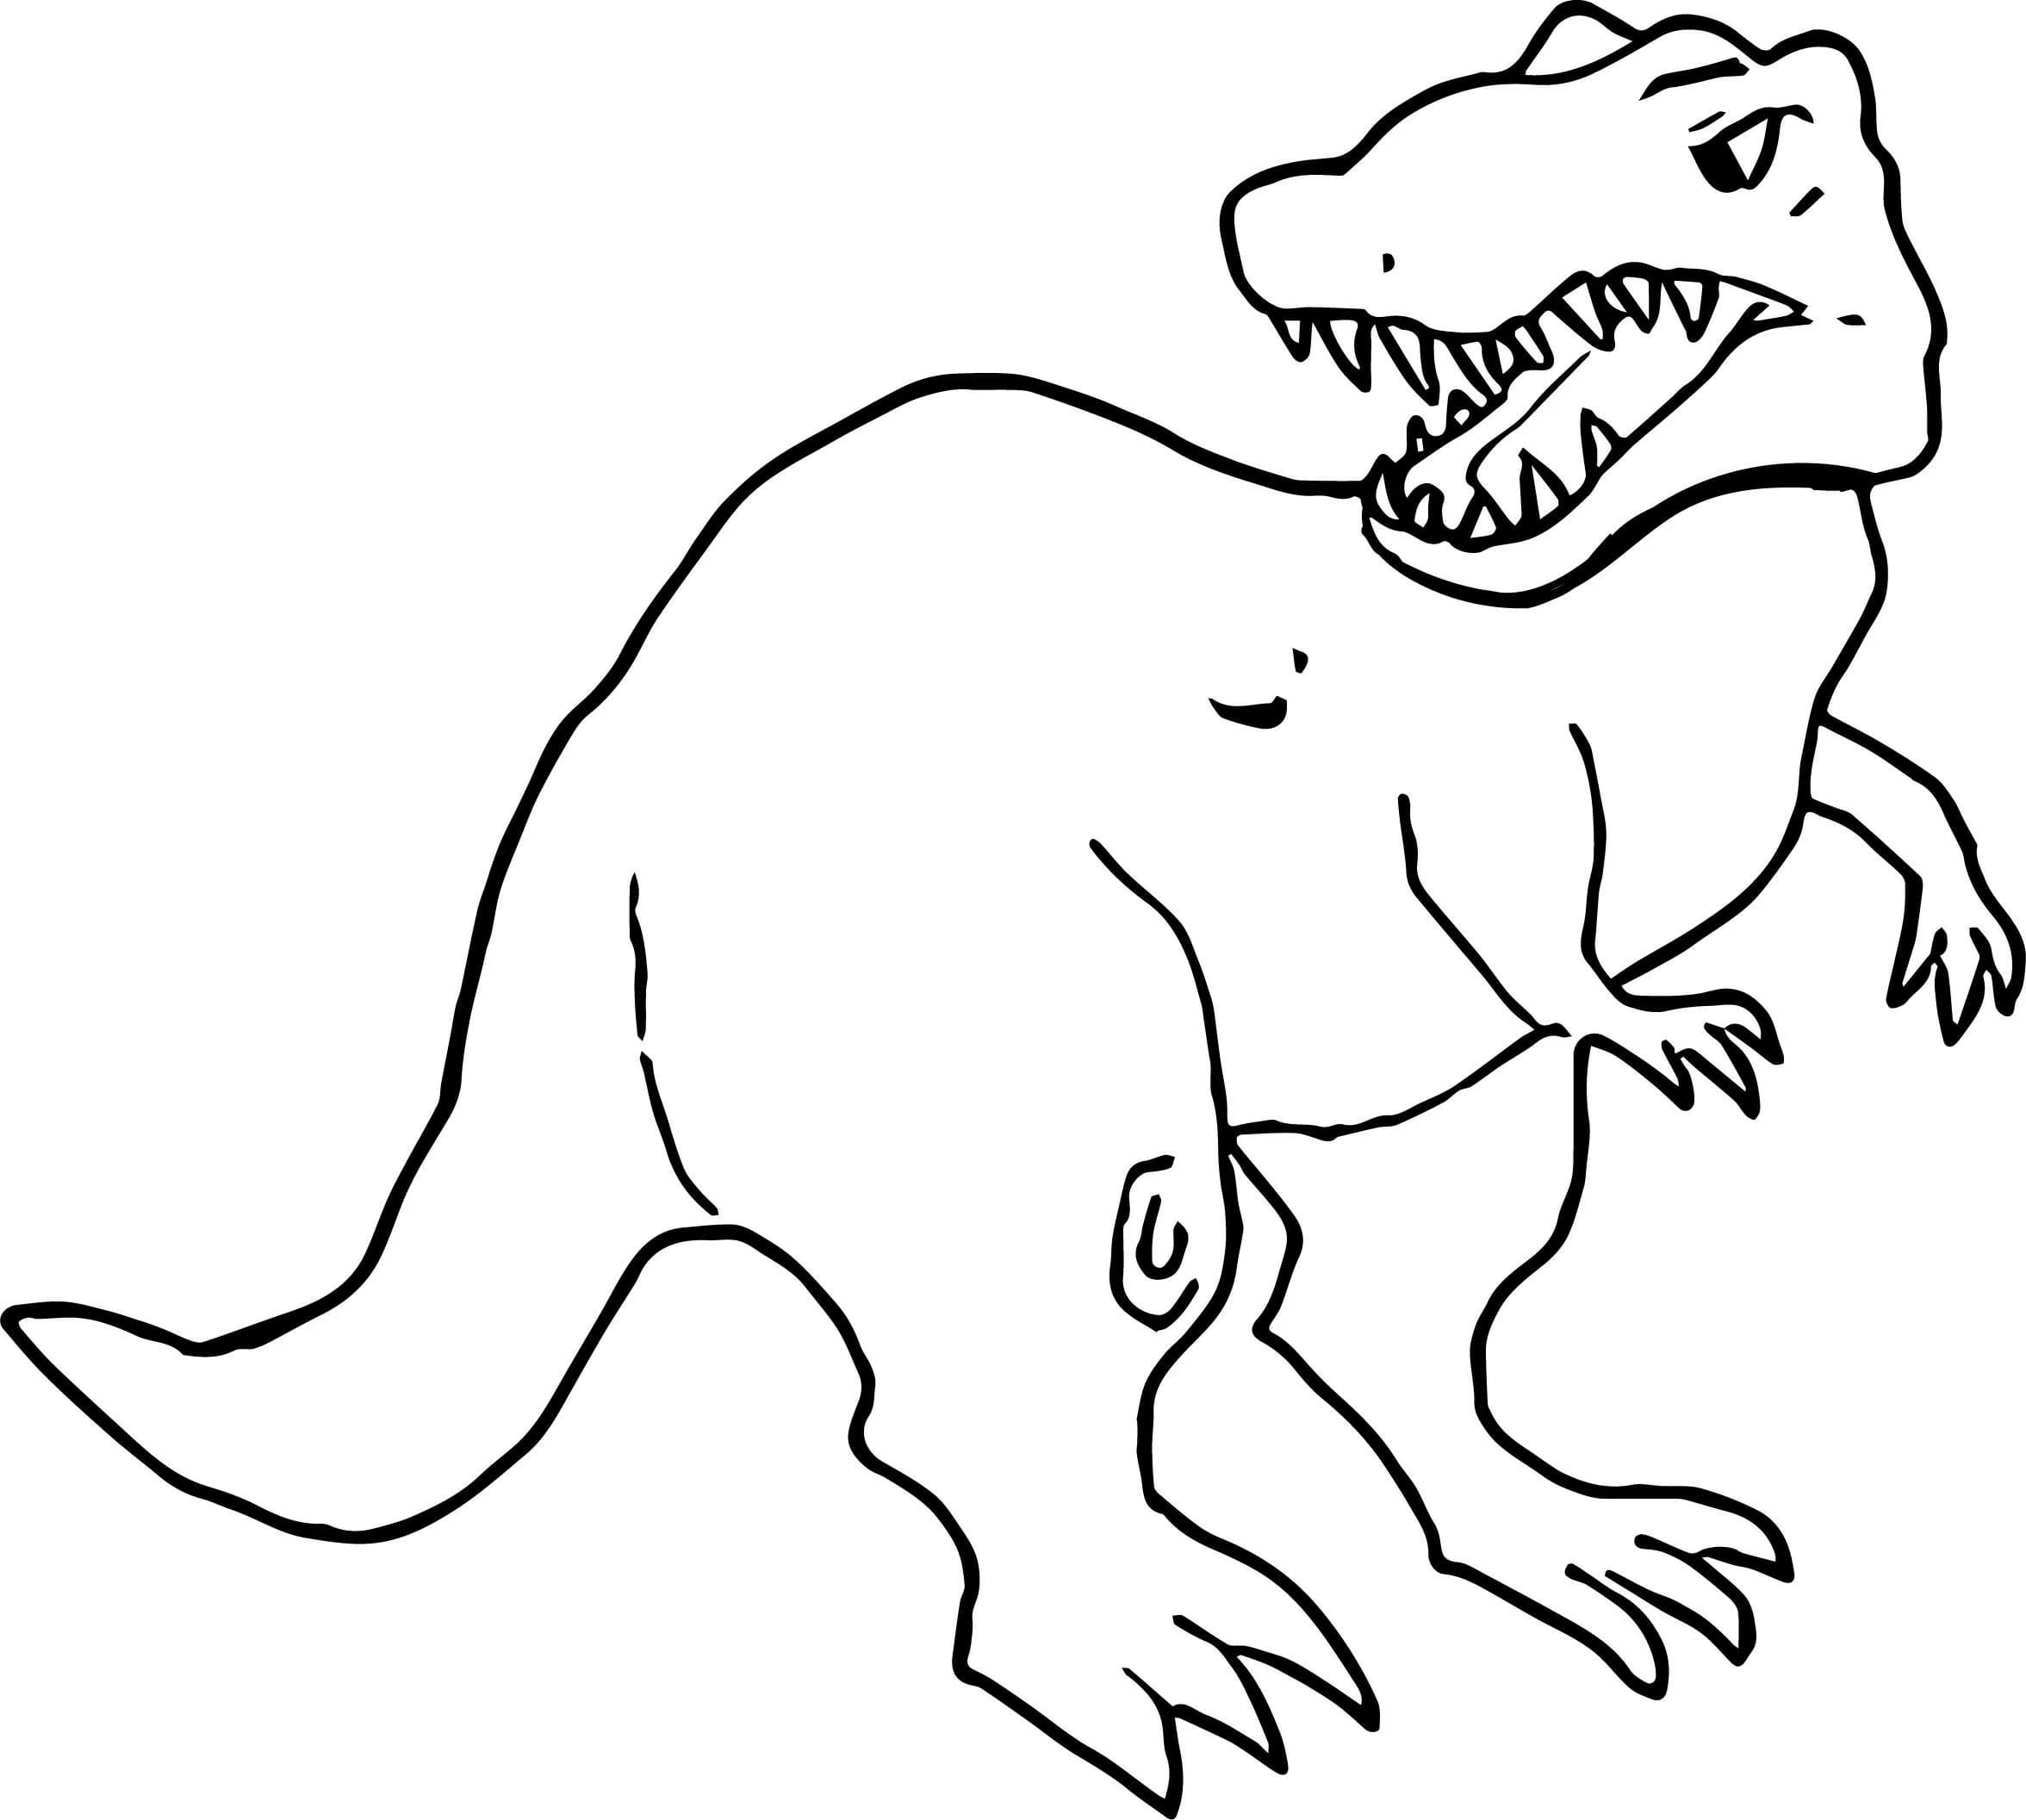 Para Colorir T-rex Um antigo habitante do nosso planeta